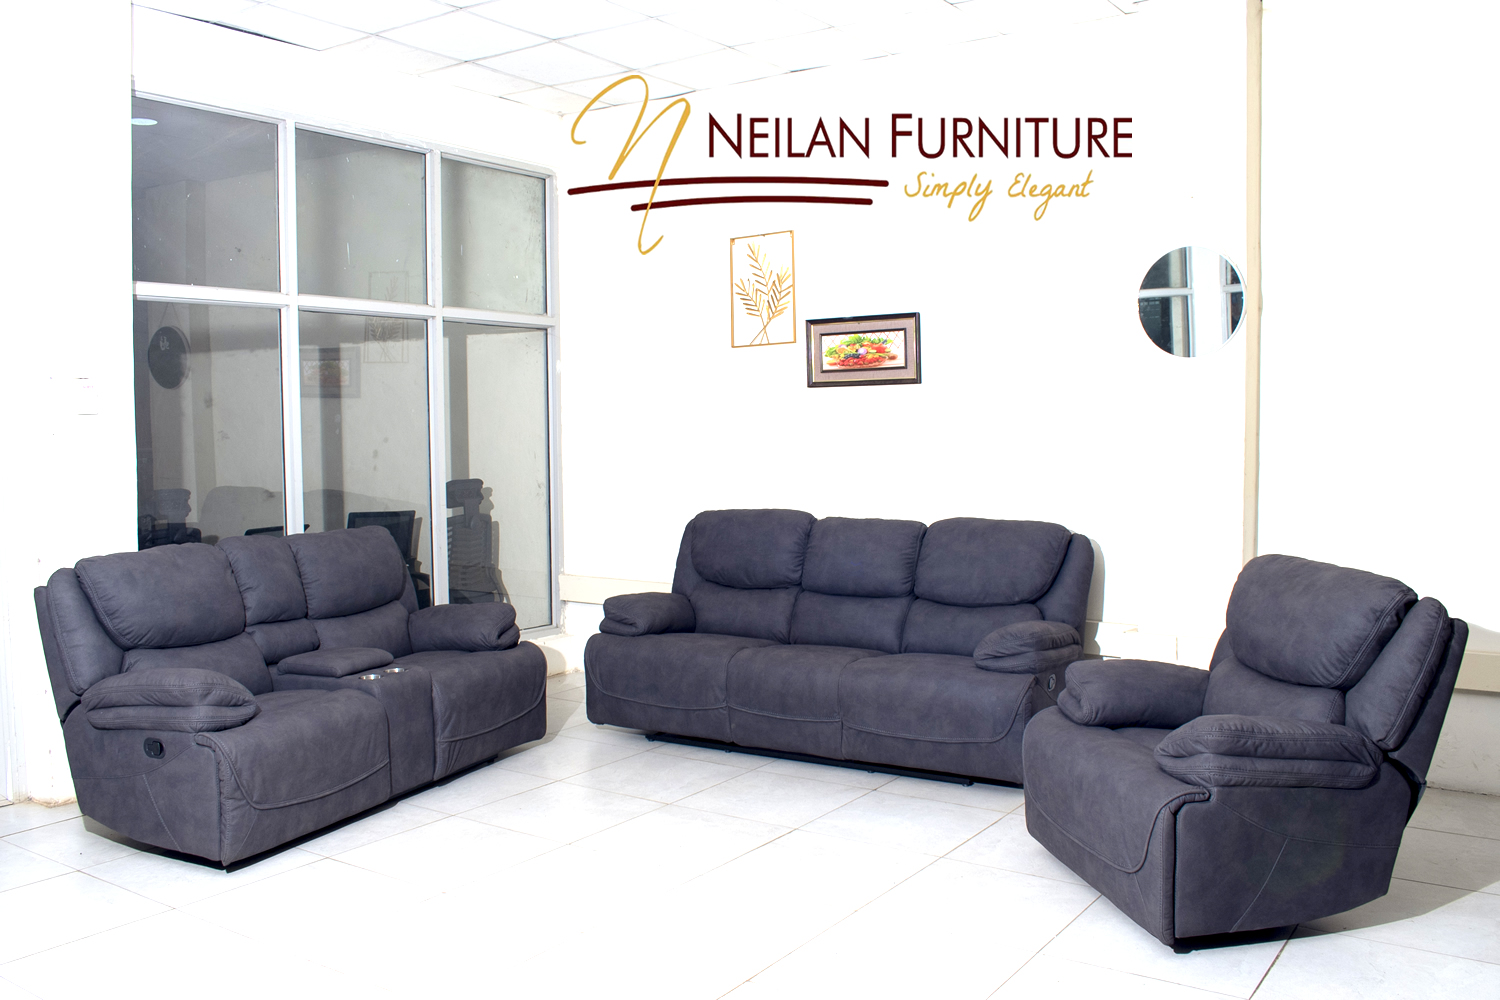 Neilan Furniture Shop in Kenya